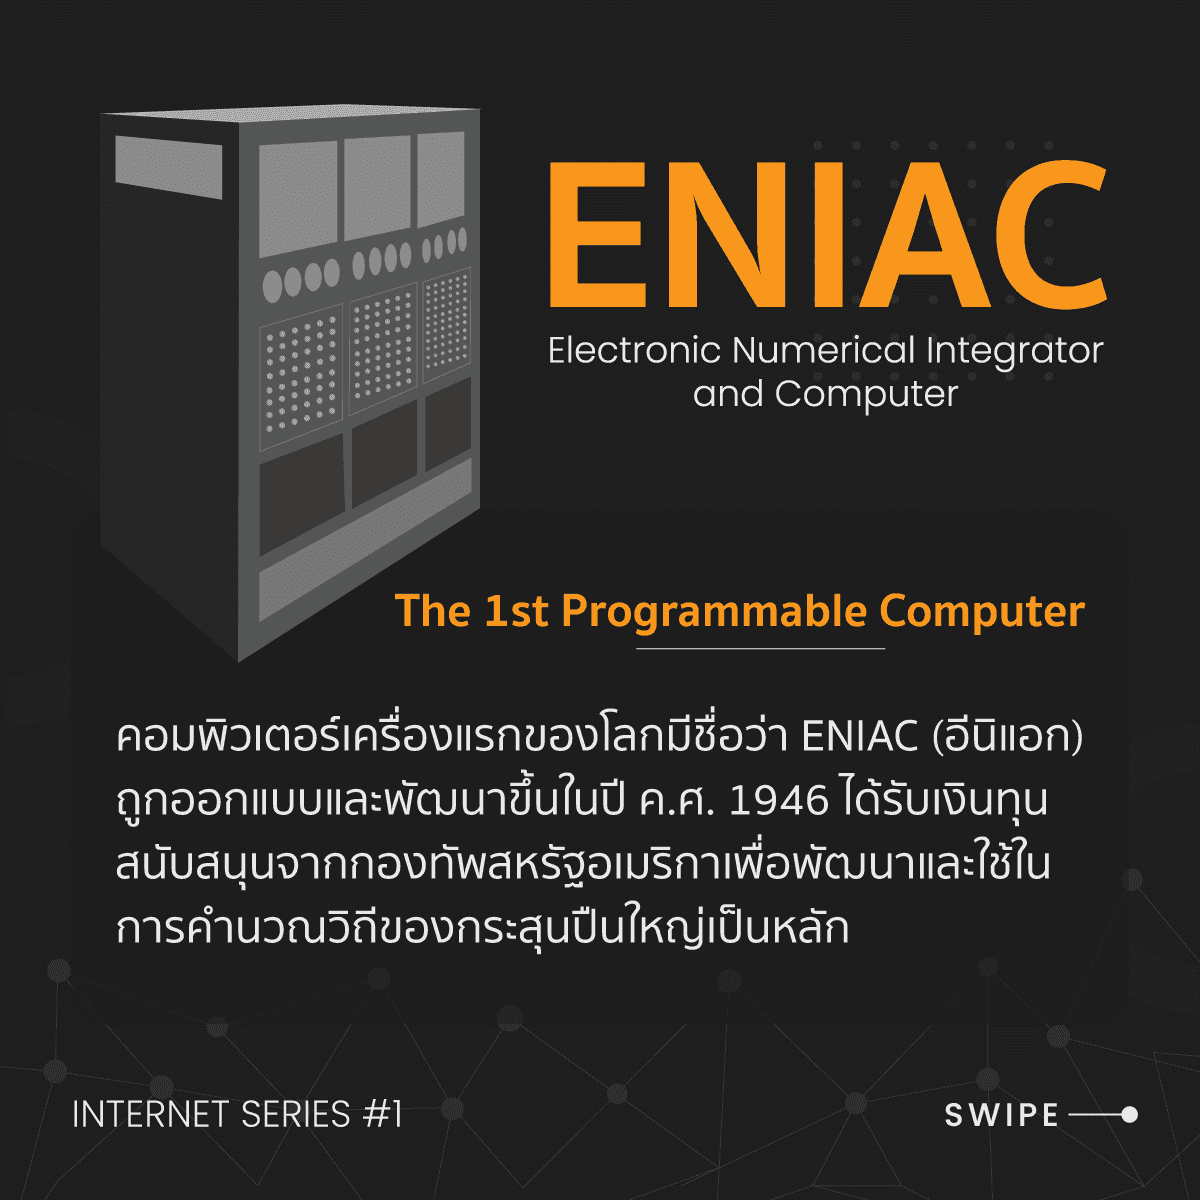 คอมพิวเตอร์เครื่องแรกของโลกและระบบเครือข่ายขนาดเล็ก